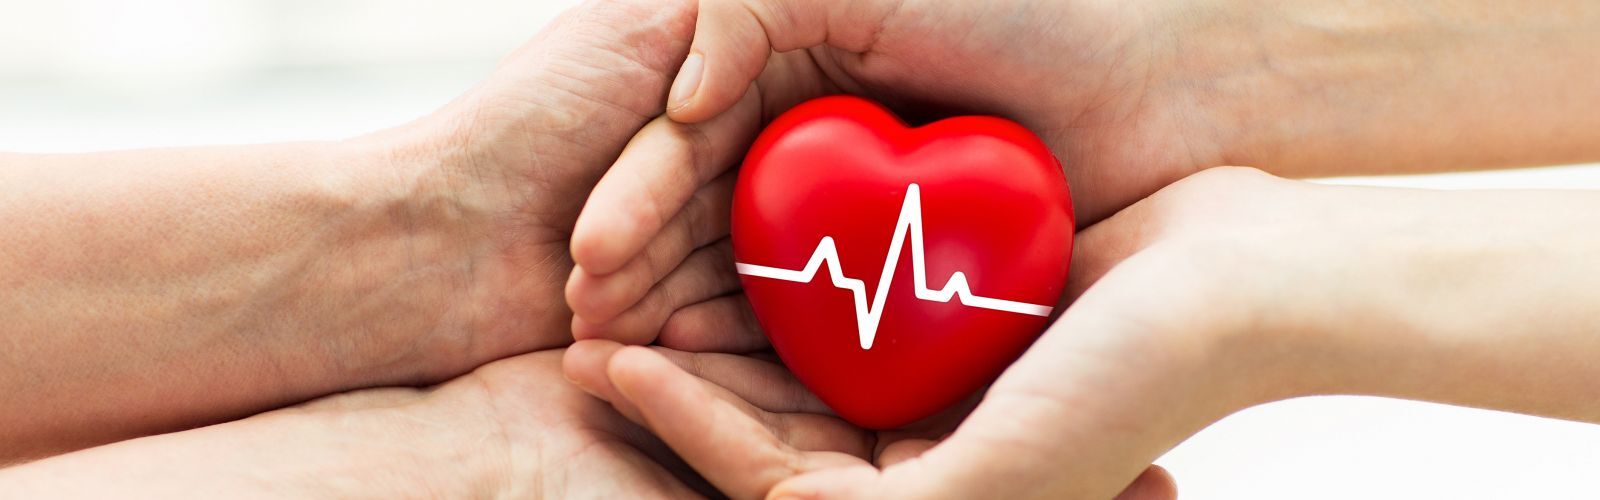 tanítani a gyereket a szív egészségéről